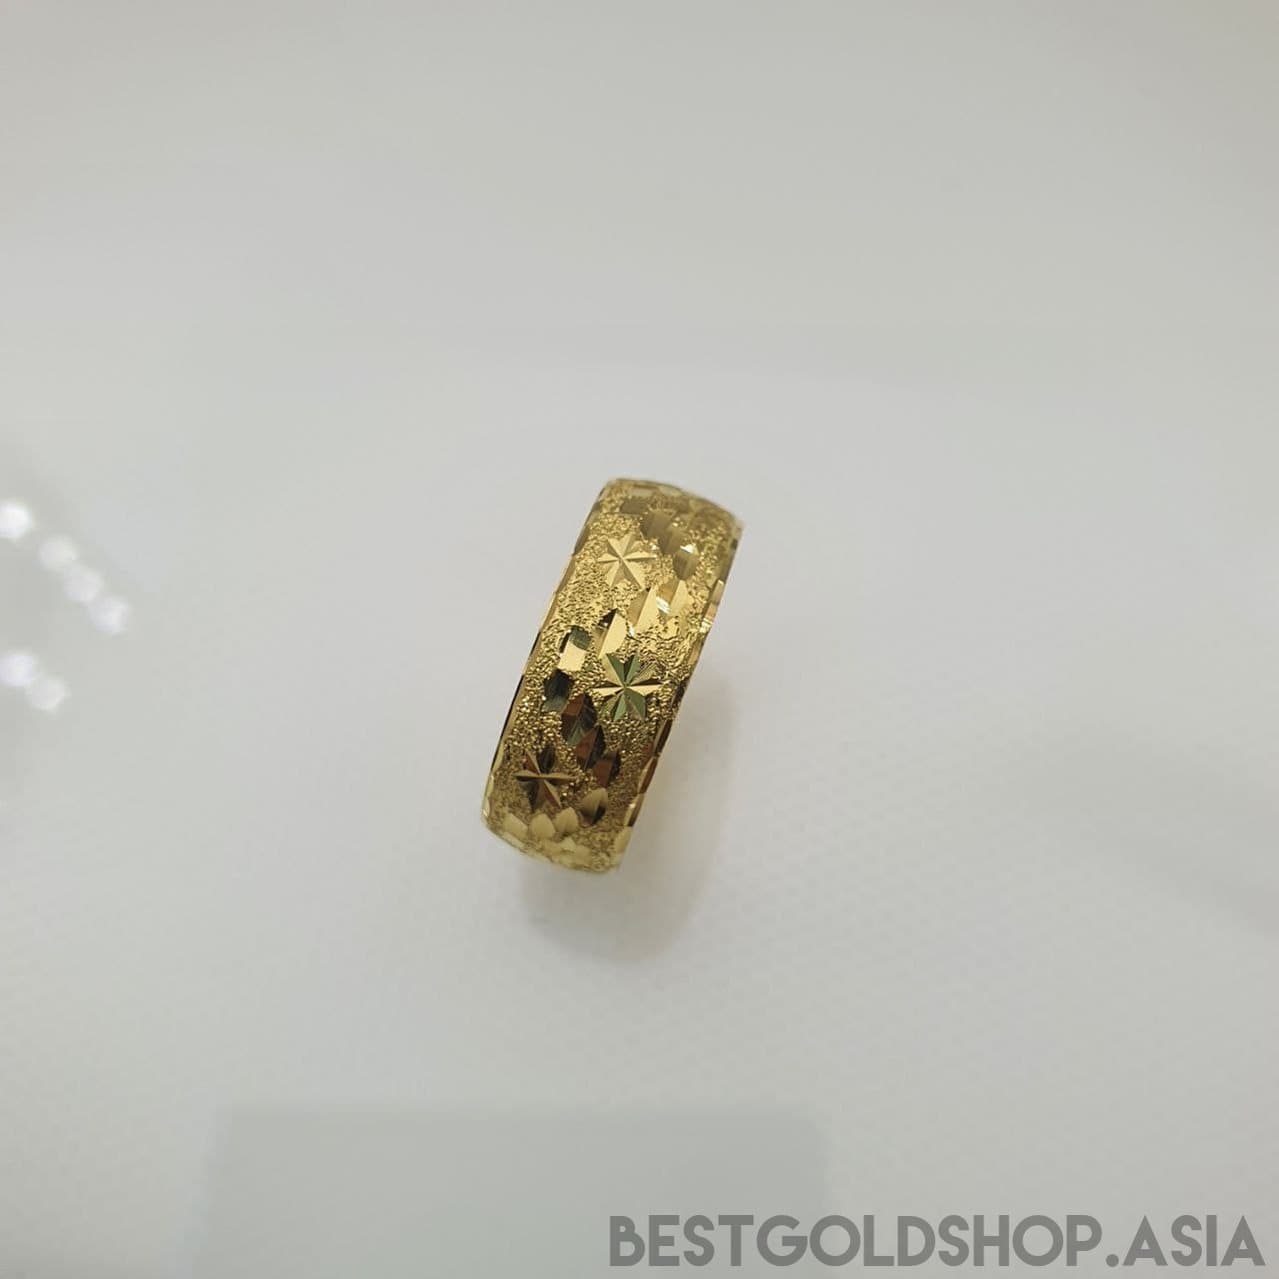 22k / 916 Gold Hollow Ring D5-916 gold-Best Gold Shop